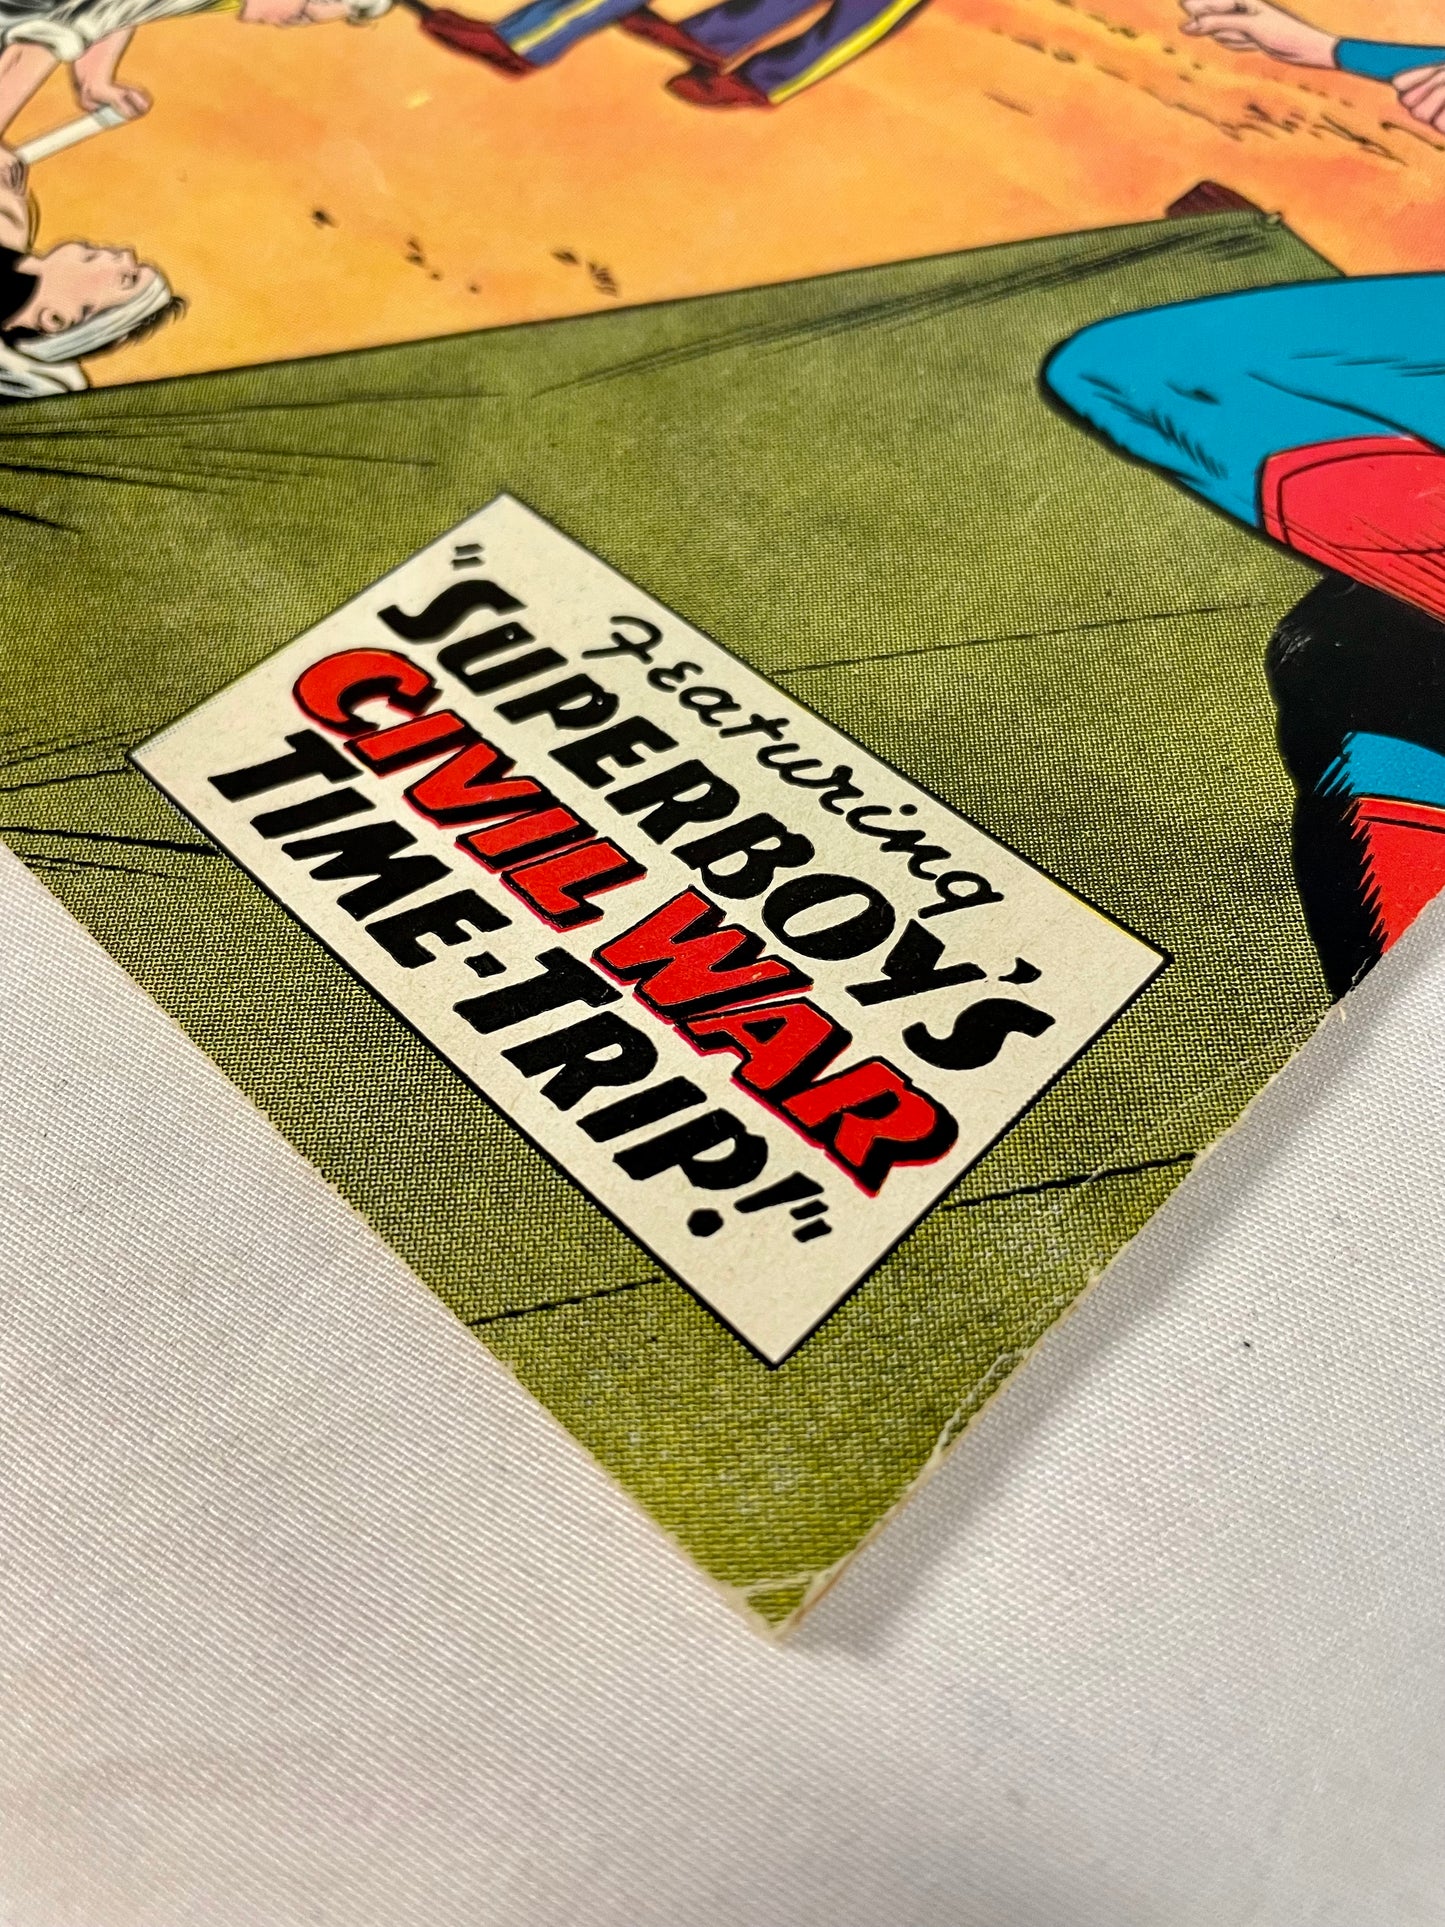 DC Comics: Superboy No. 91